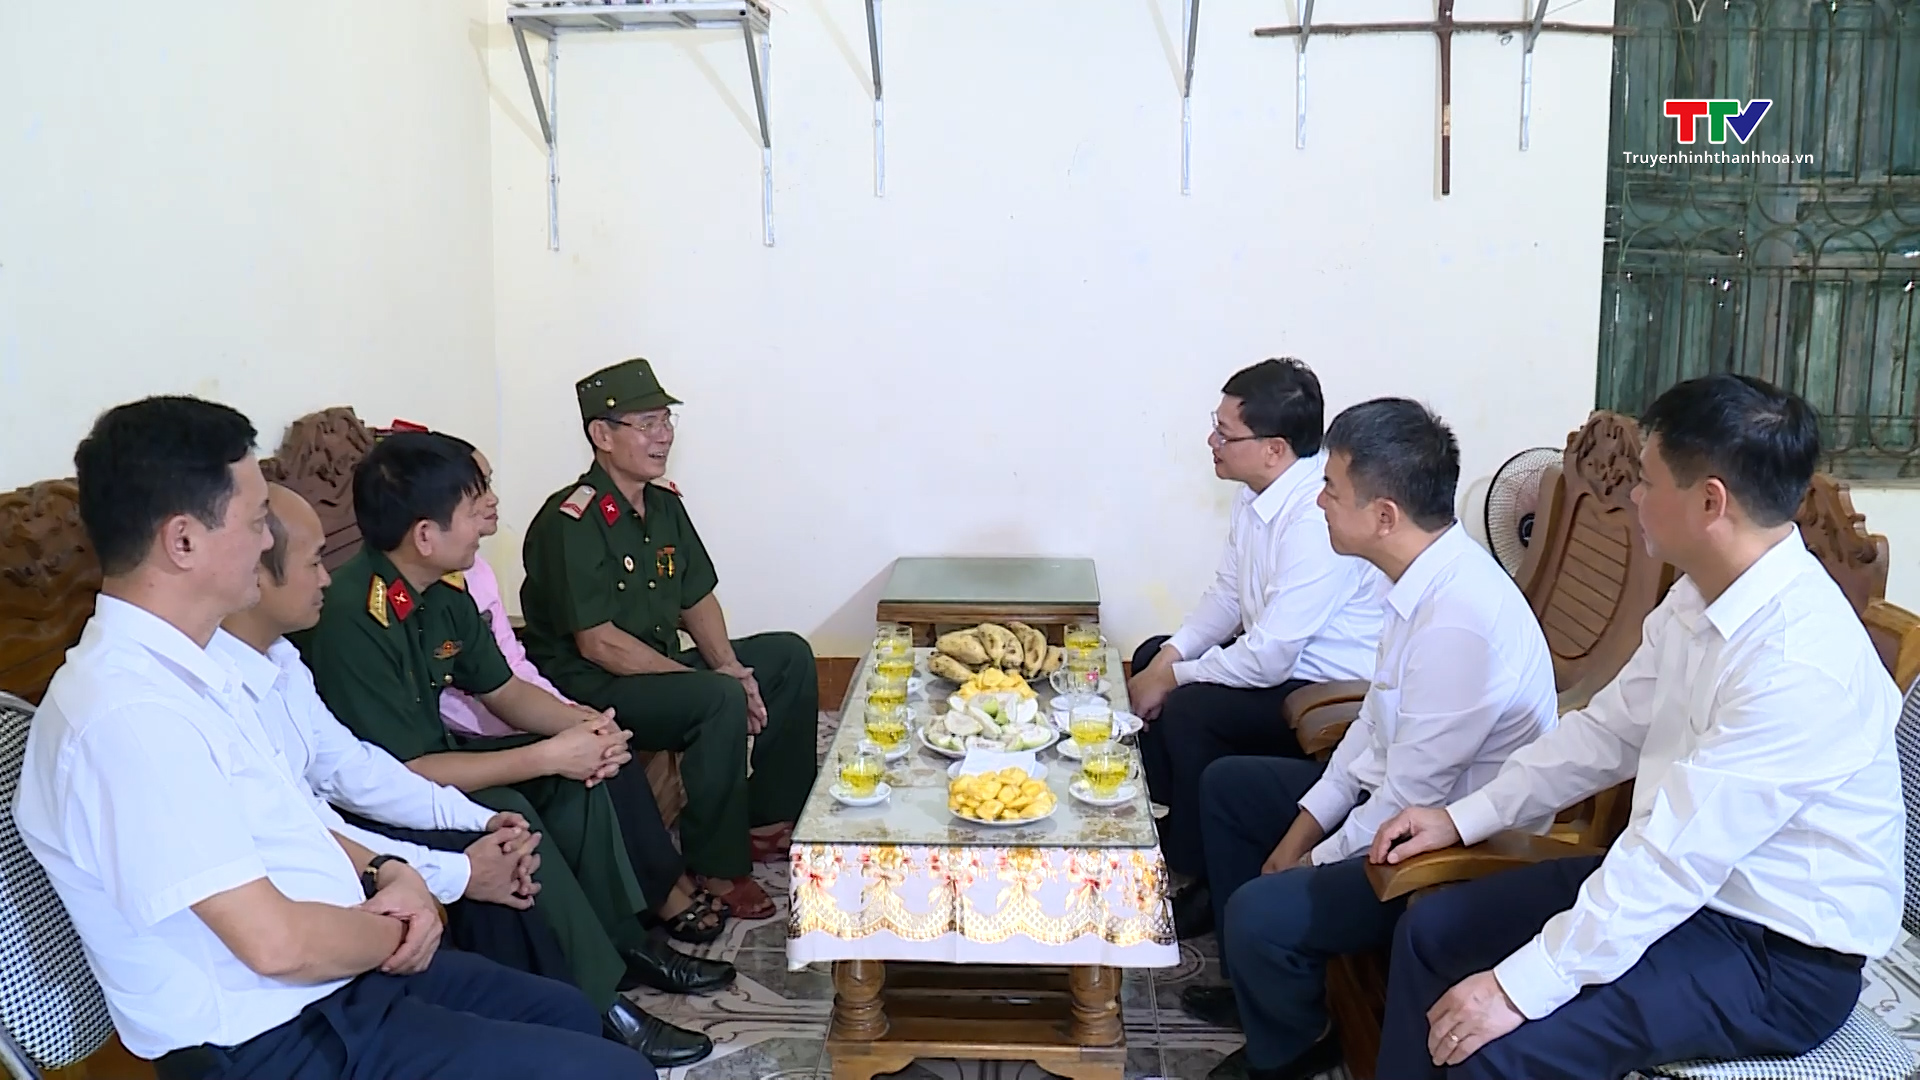 Phó Chủ tịch UBND tỉnh Mai Xuân Liêm thăm, tặng qùa các gia đình chính sách- Ảnh 5.